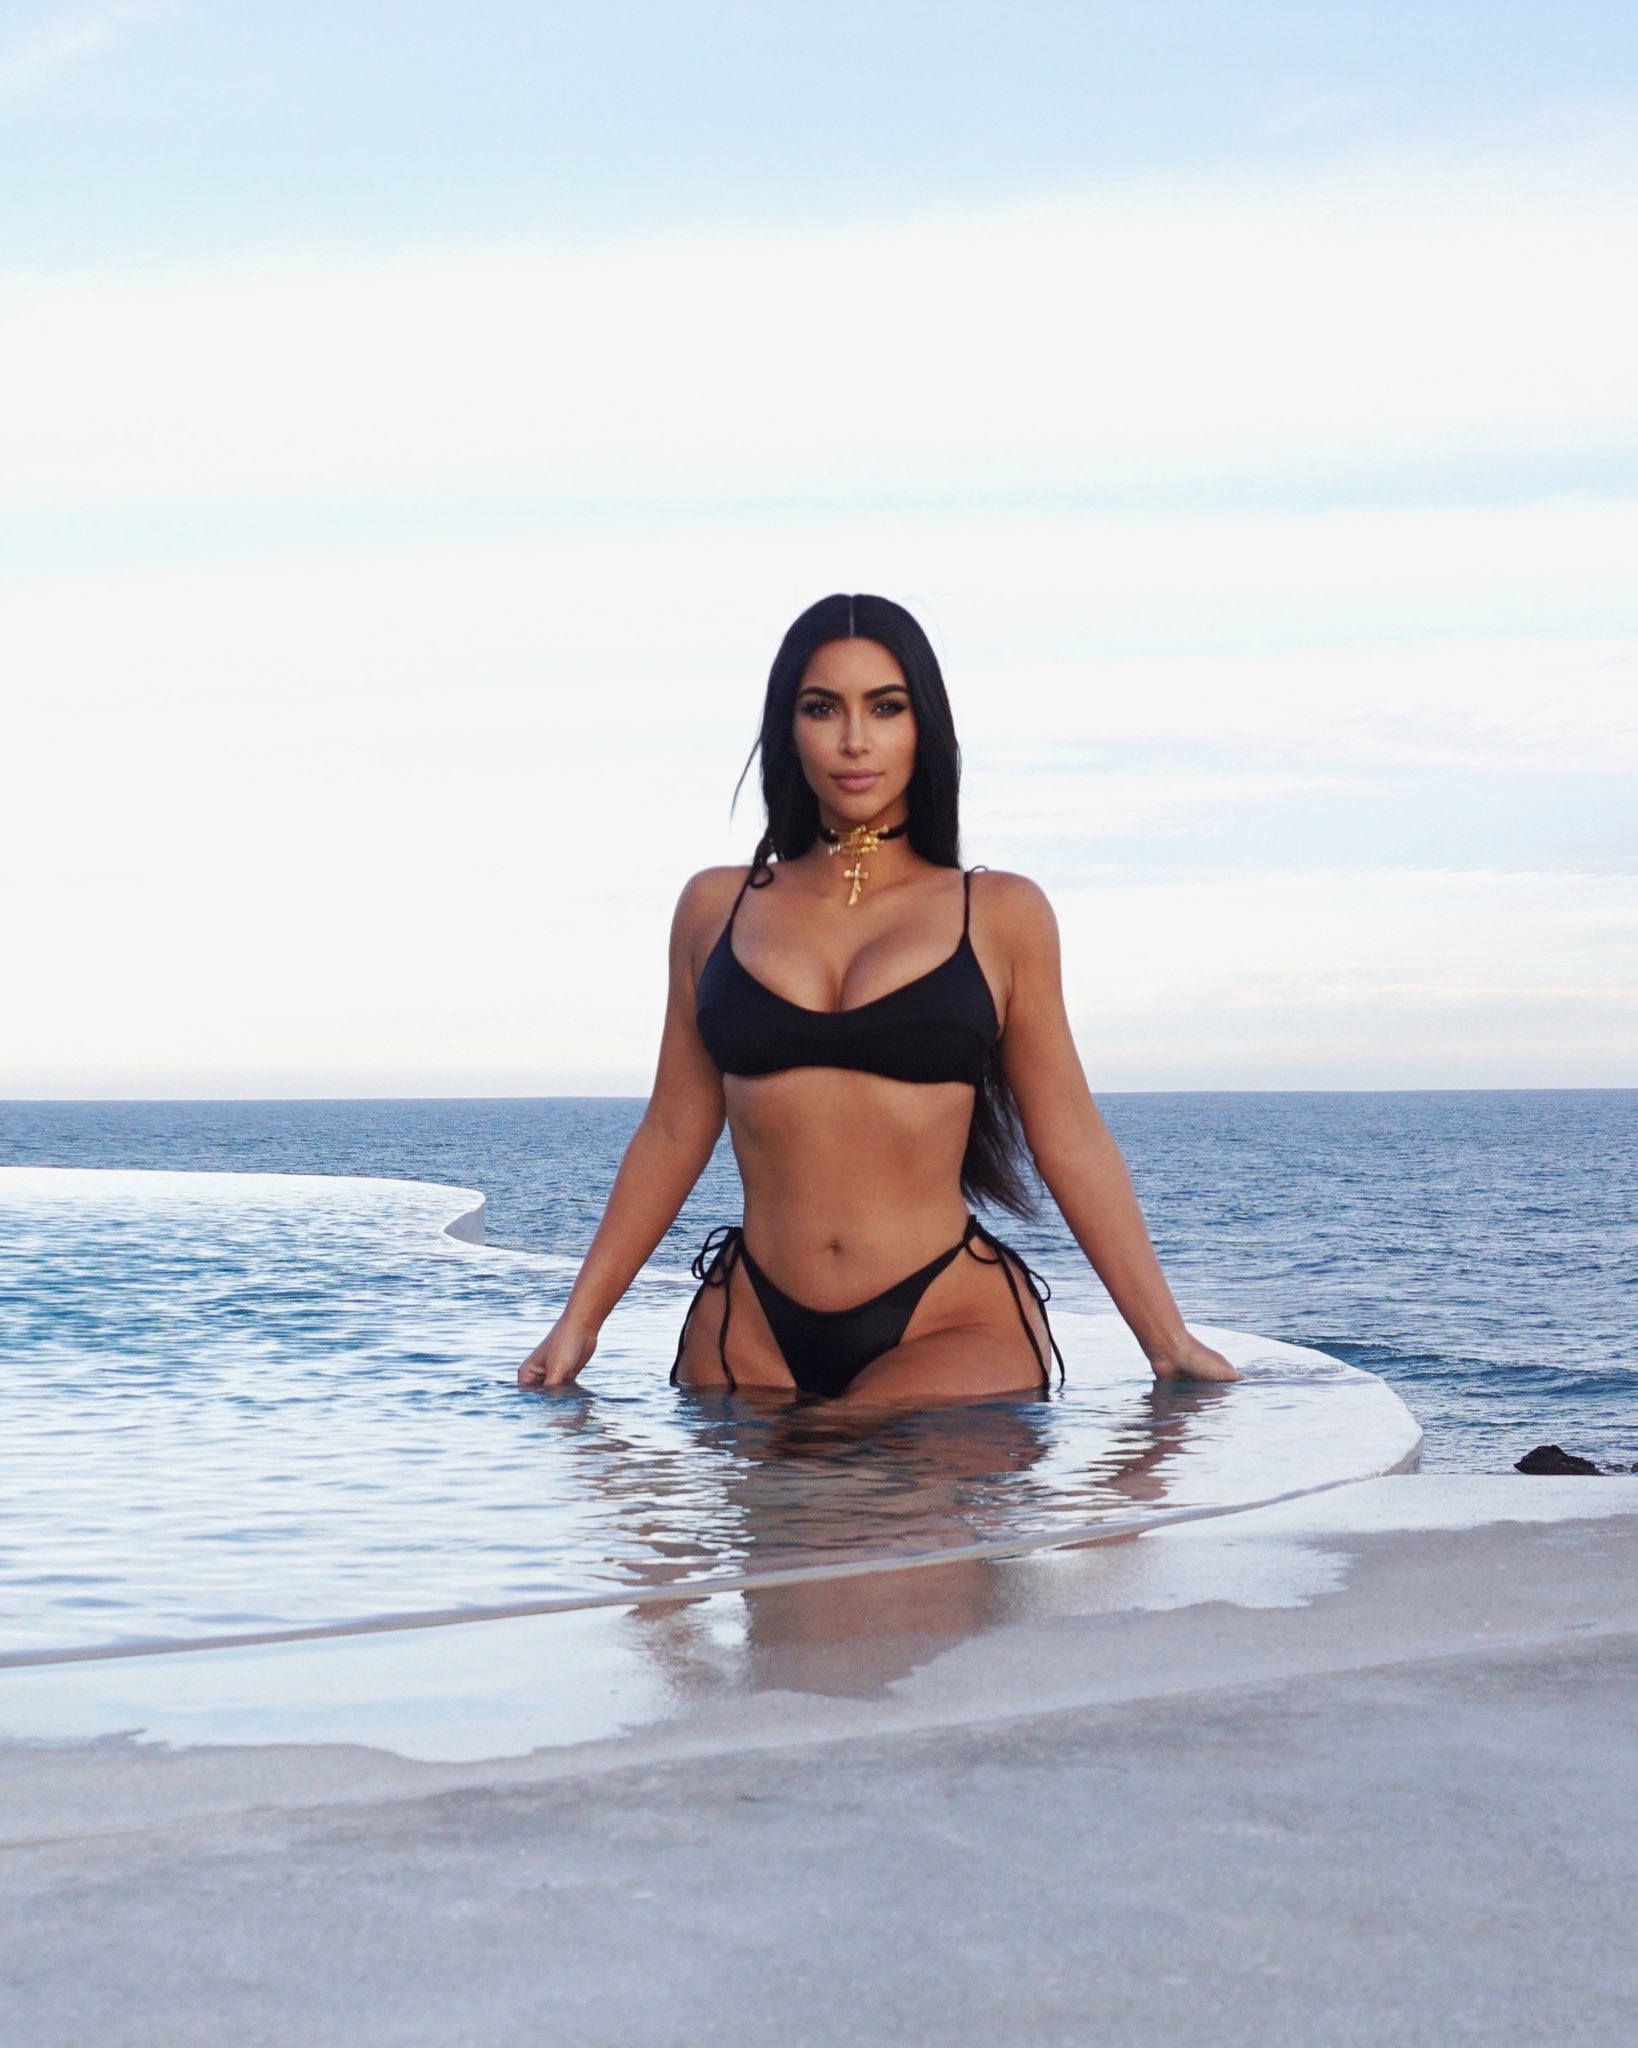 Fotos n°2 : Las vacaciones de Kim Kardashian